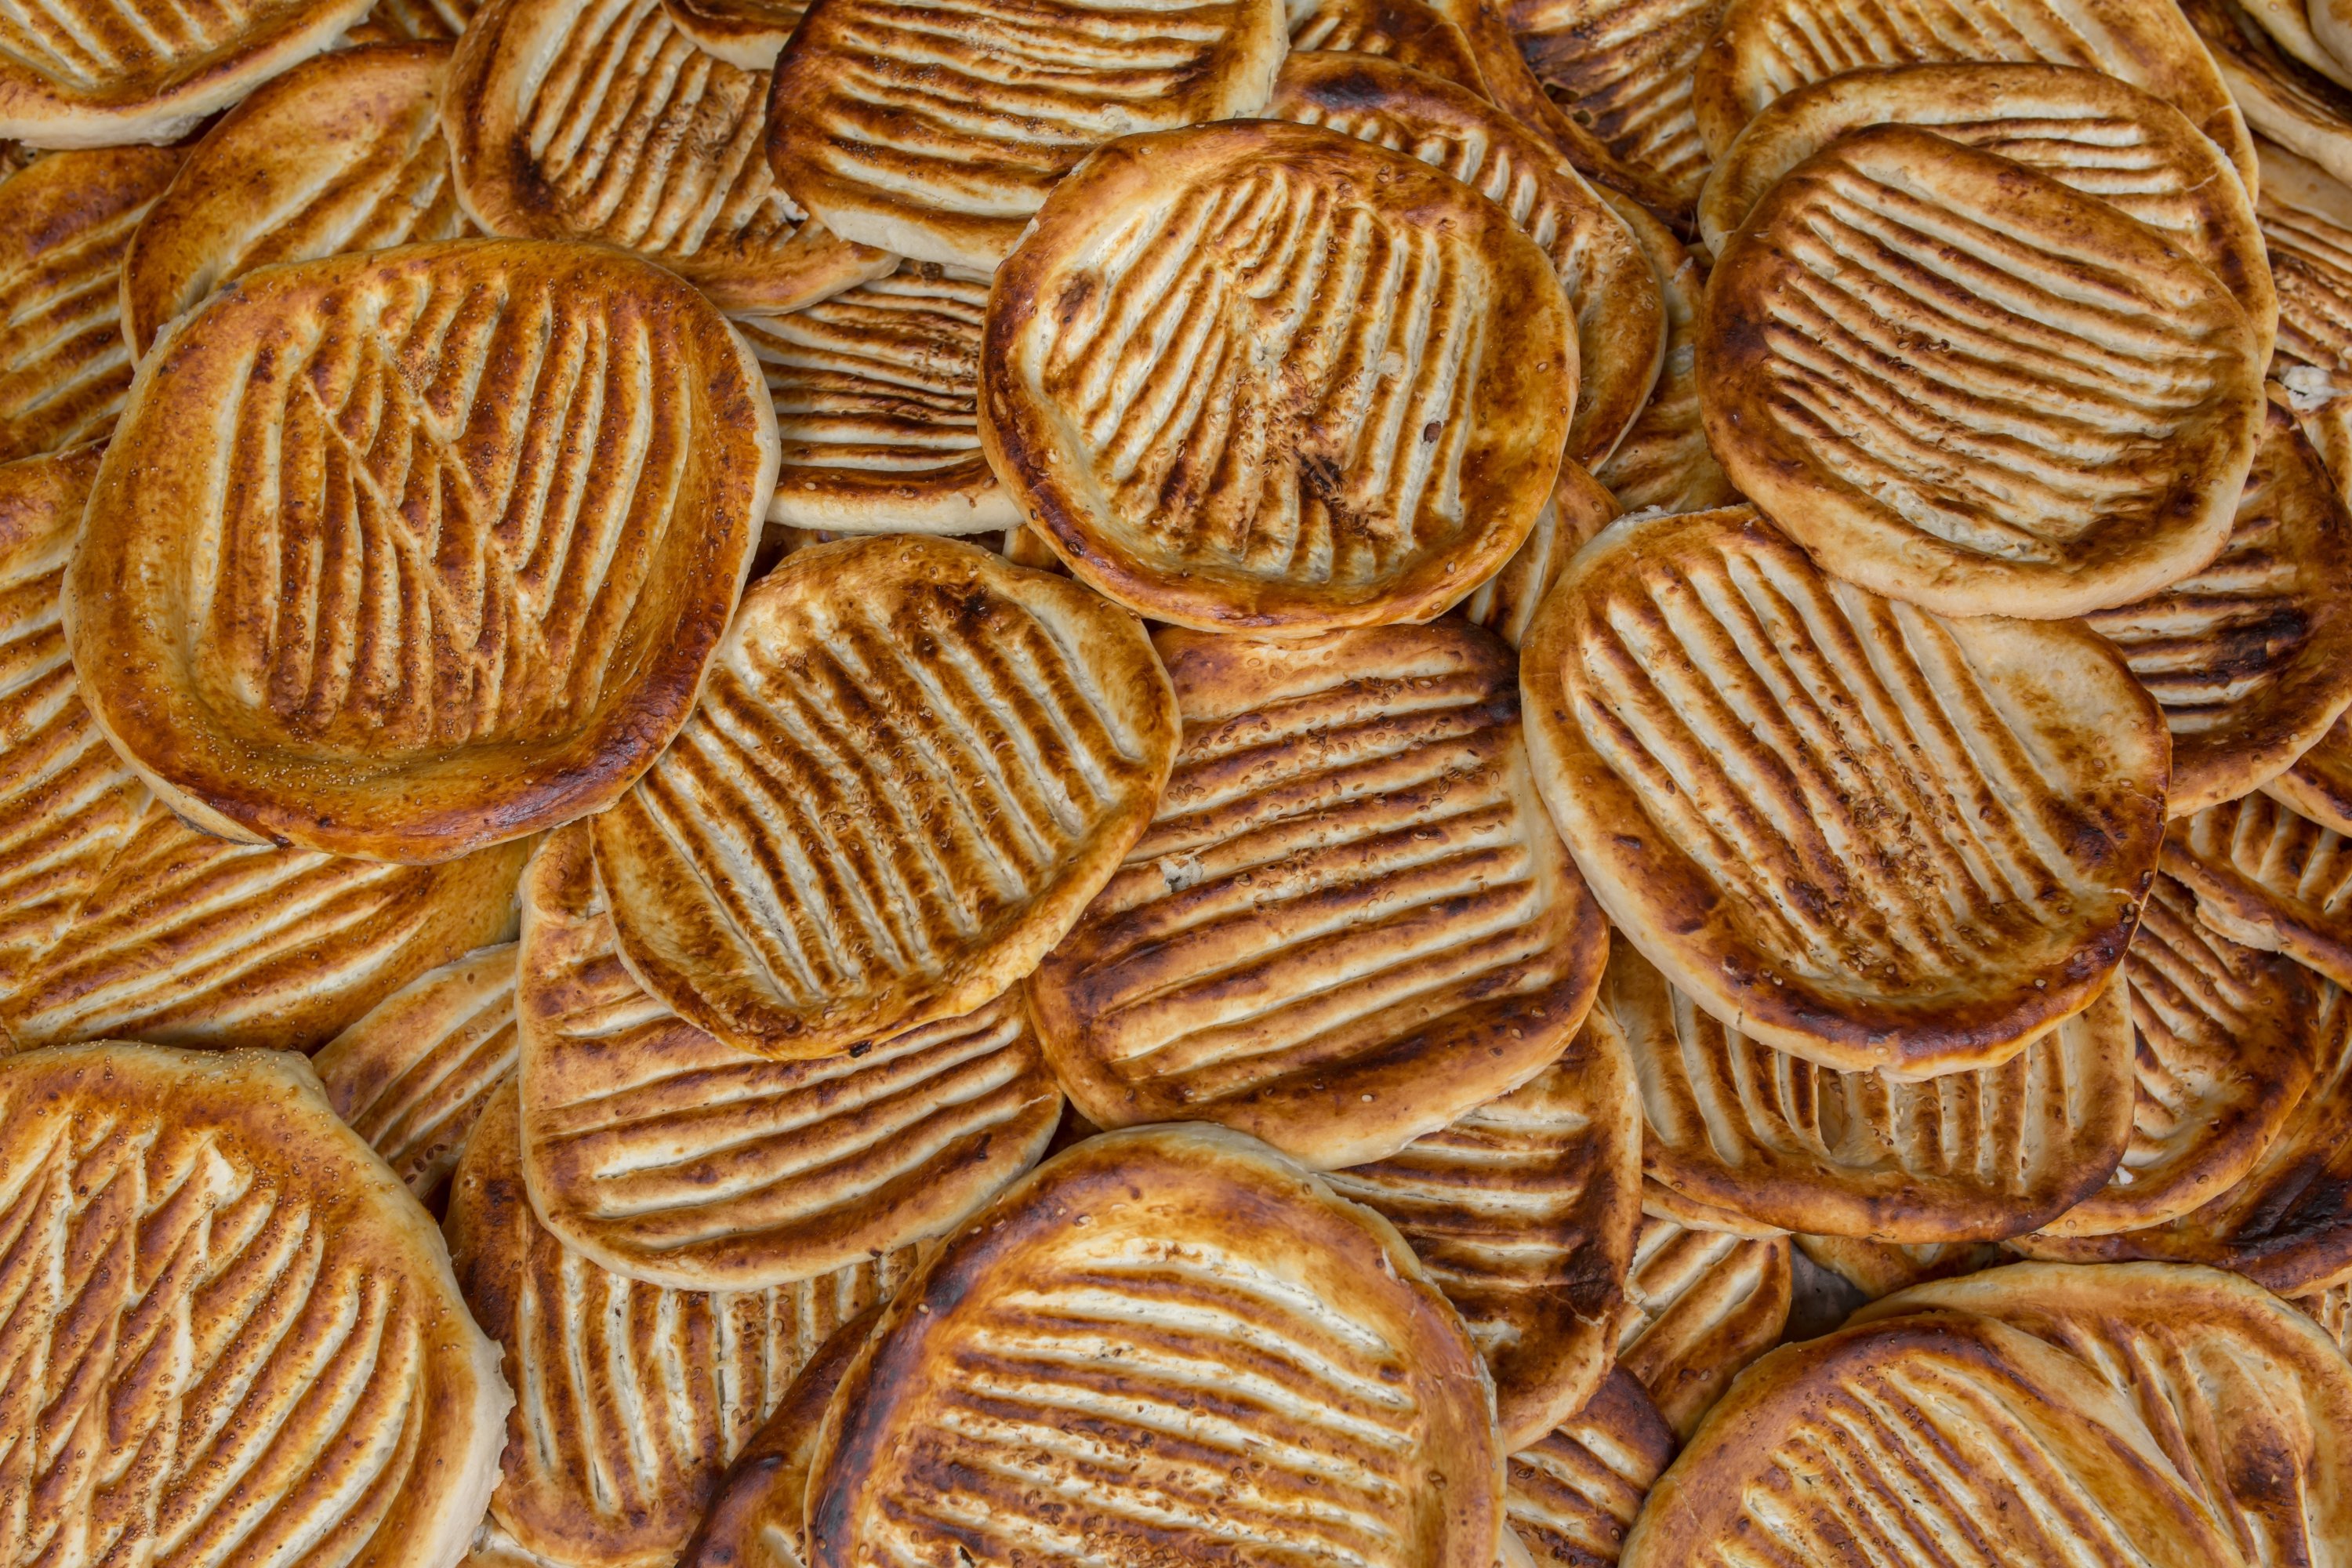 Gheyv czhot is a traditional Kashmiri bread freshly baked in Kashmir. (Shutterstock) 